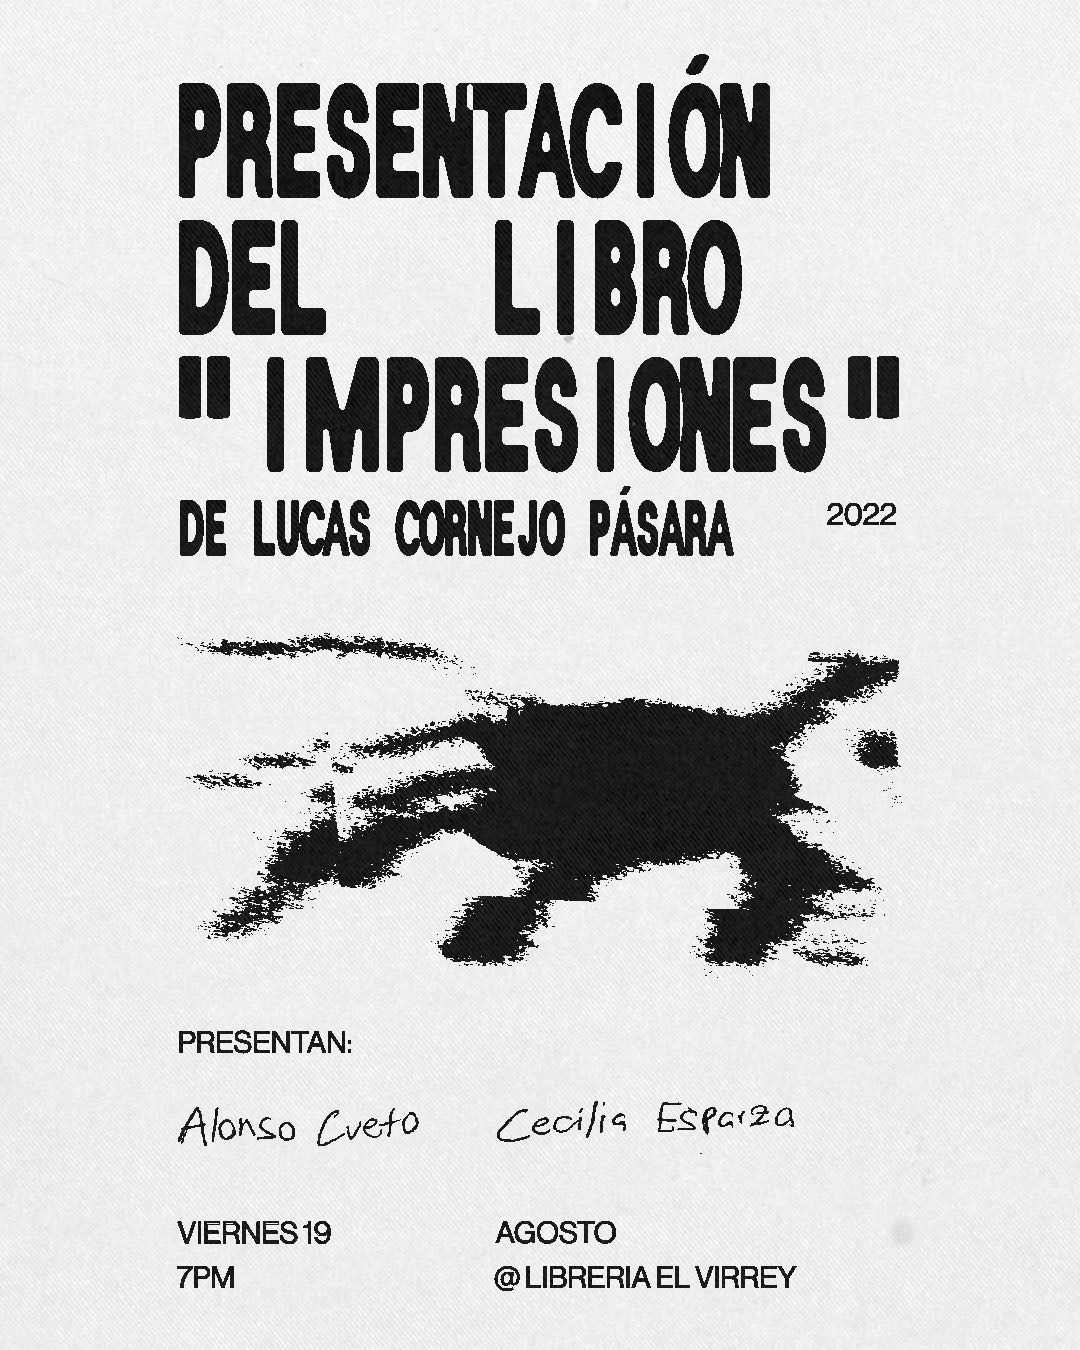 Lucas Cornejo Pásara, egresado de nuestra Facultad, presentará su primer libro “Impresiones”, de llegada internacional